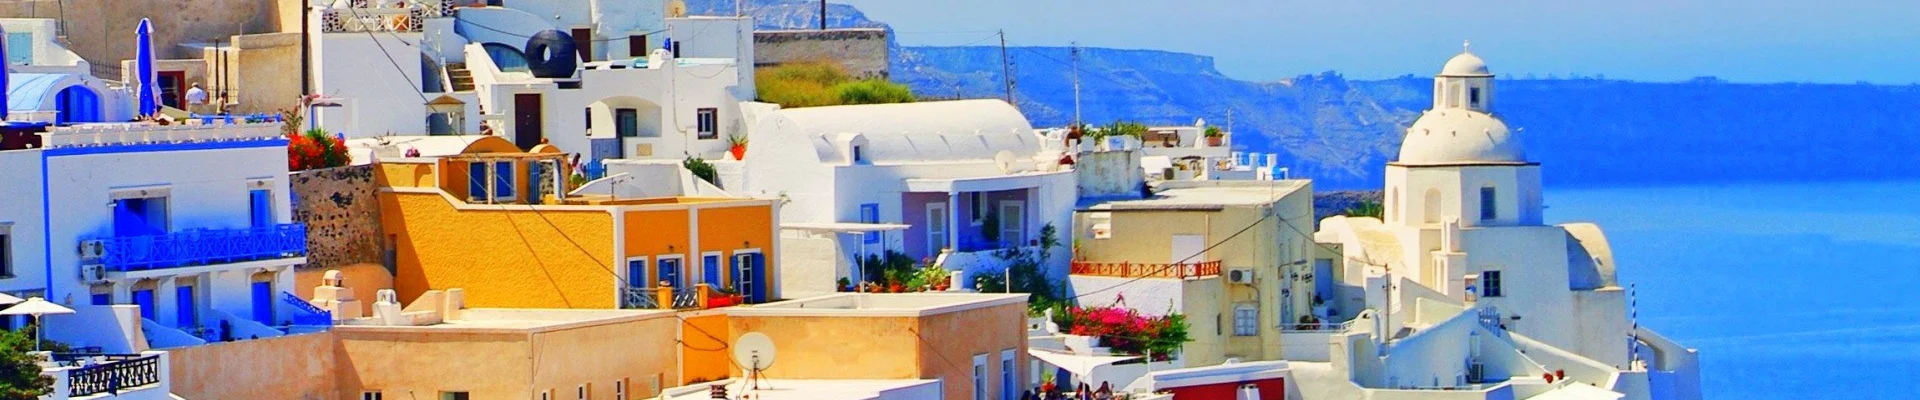 Costa Fortuna ile Yunan Adaları - İSTANBUL HAREKETLİ VE VARIŞLI Kapak Fotoğrafı